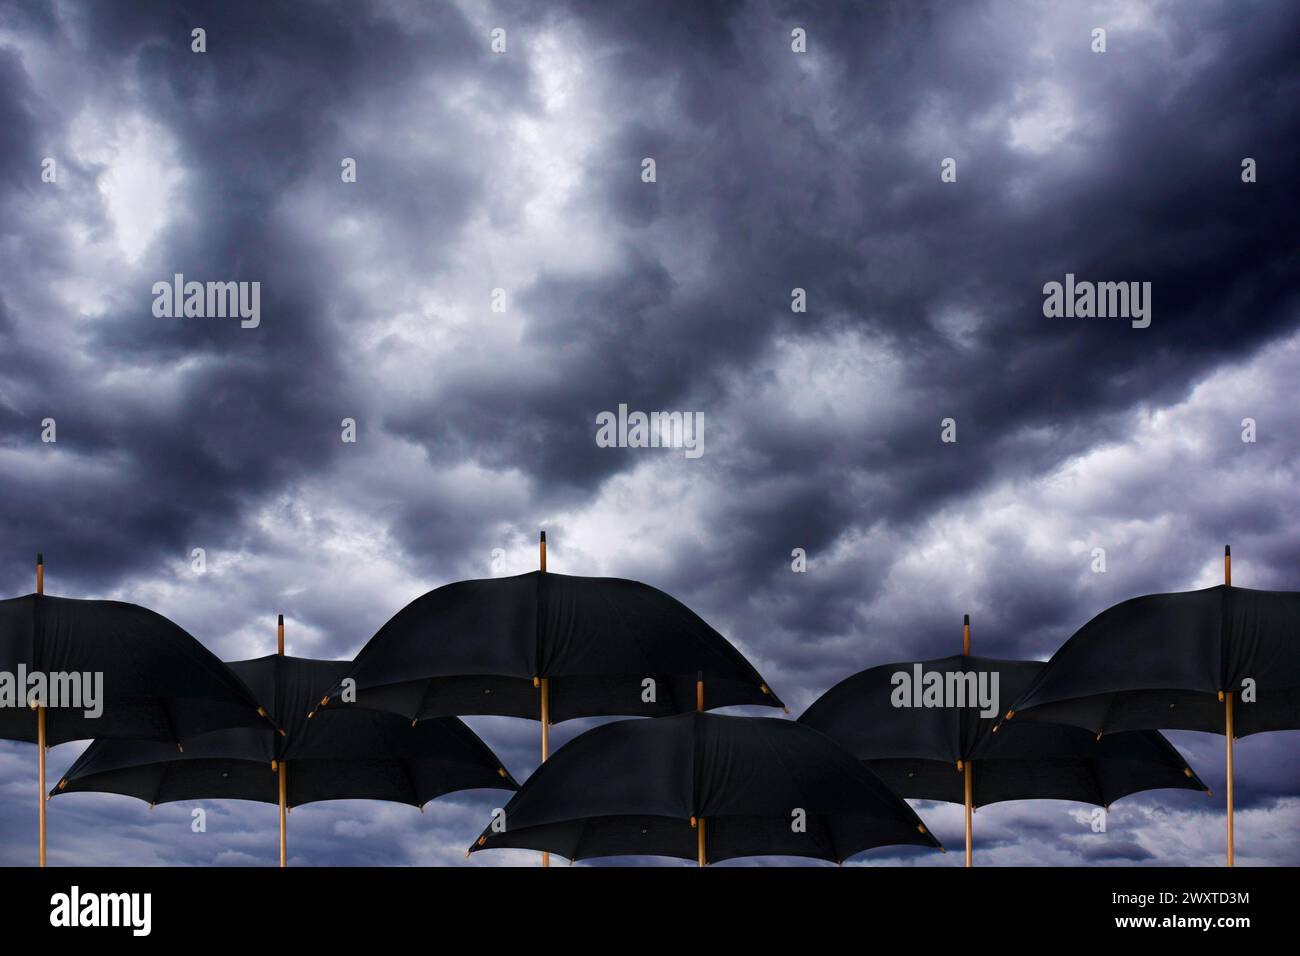 Offene schwarze Regenschirme unter einem dramatisch bewölkten und stürmischen Himmel Stockfoto